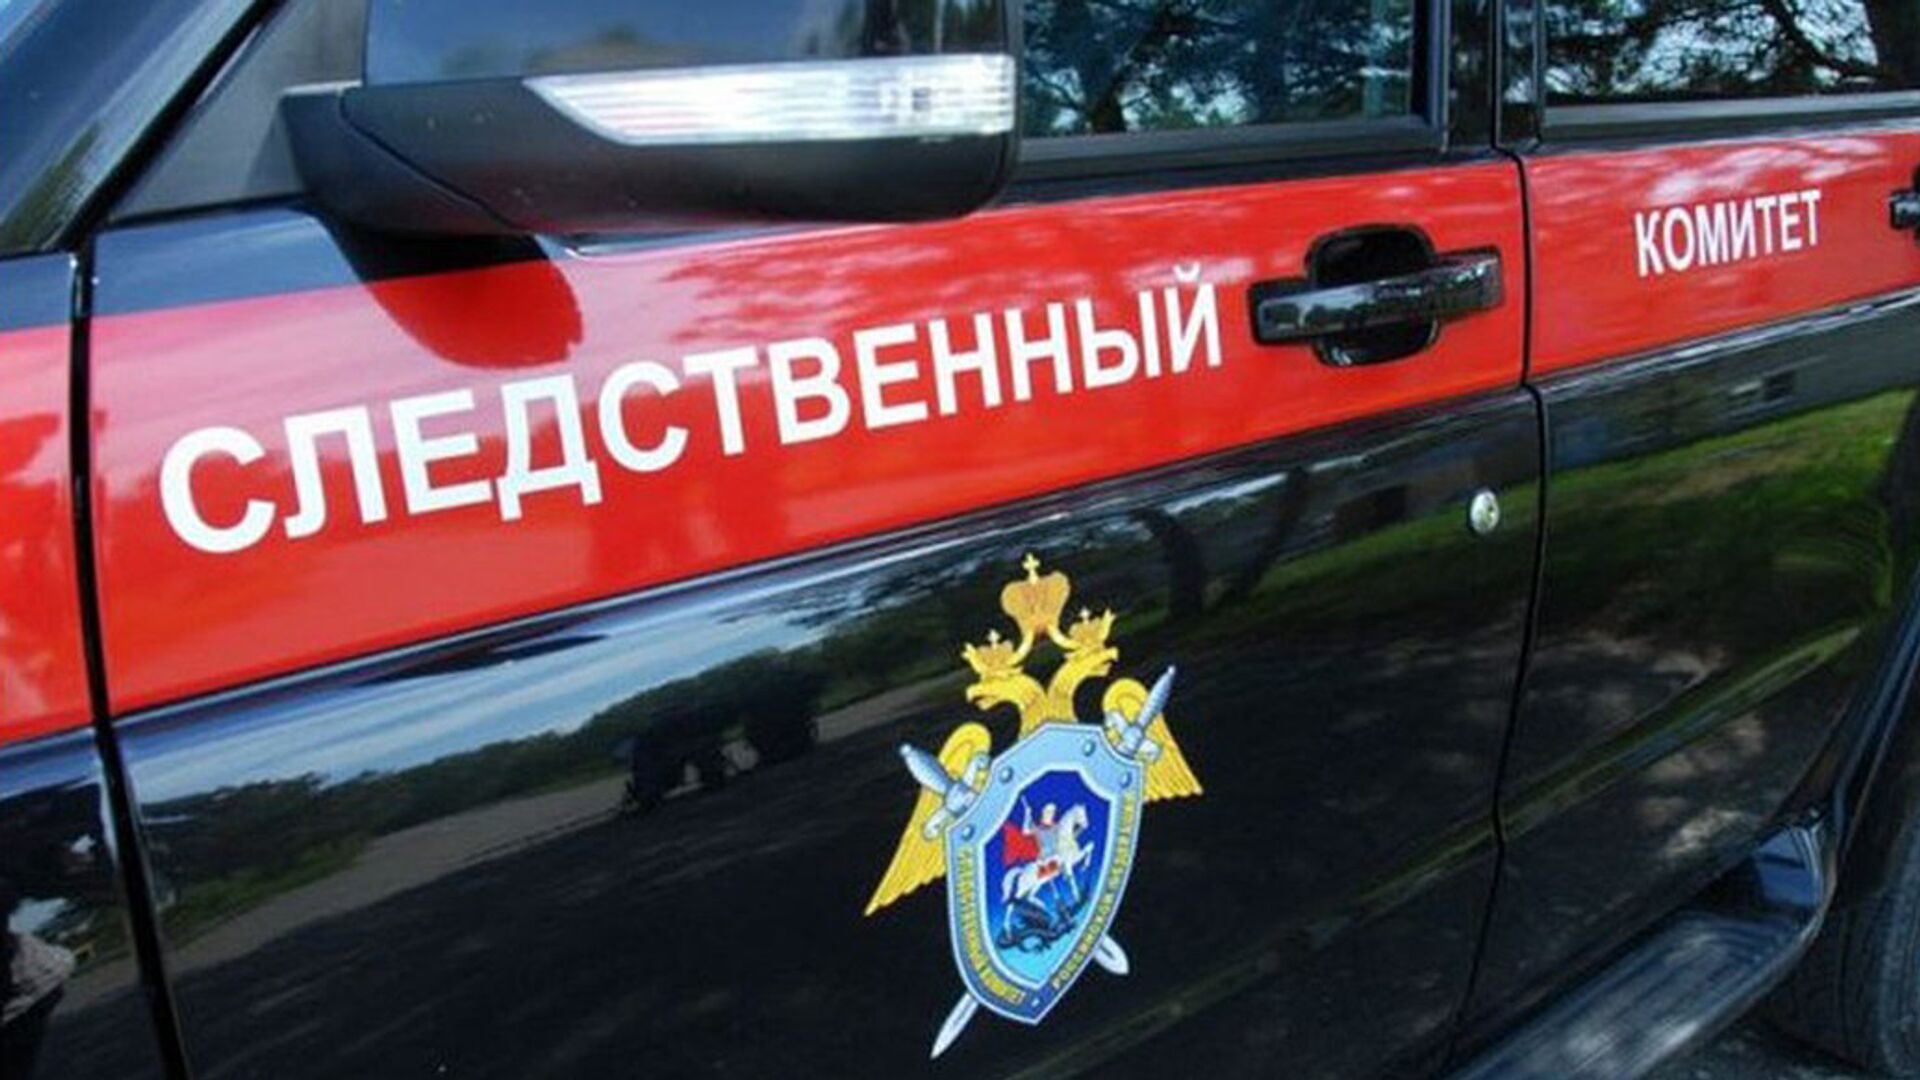 СК начал допрос подозреваемого в убийстве молодого человека из-за парковки в Москве